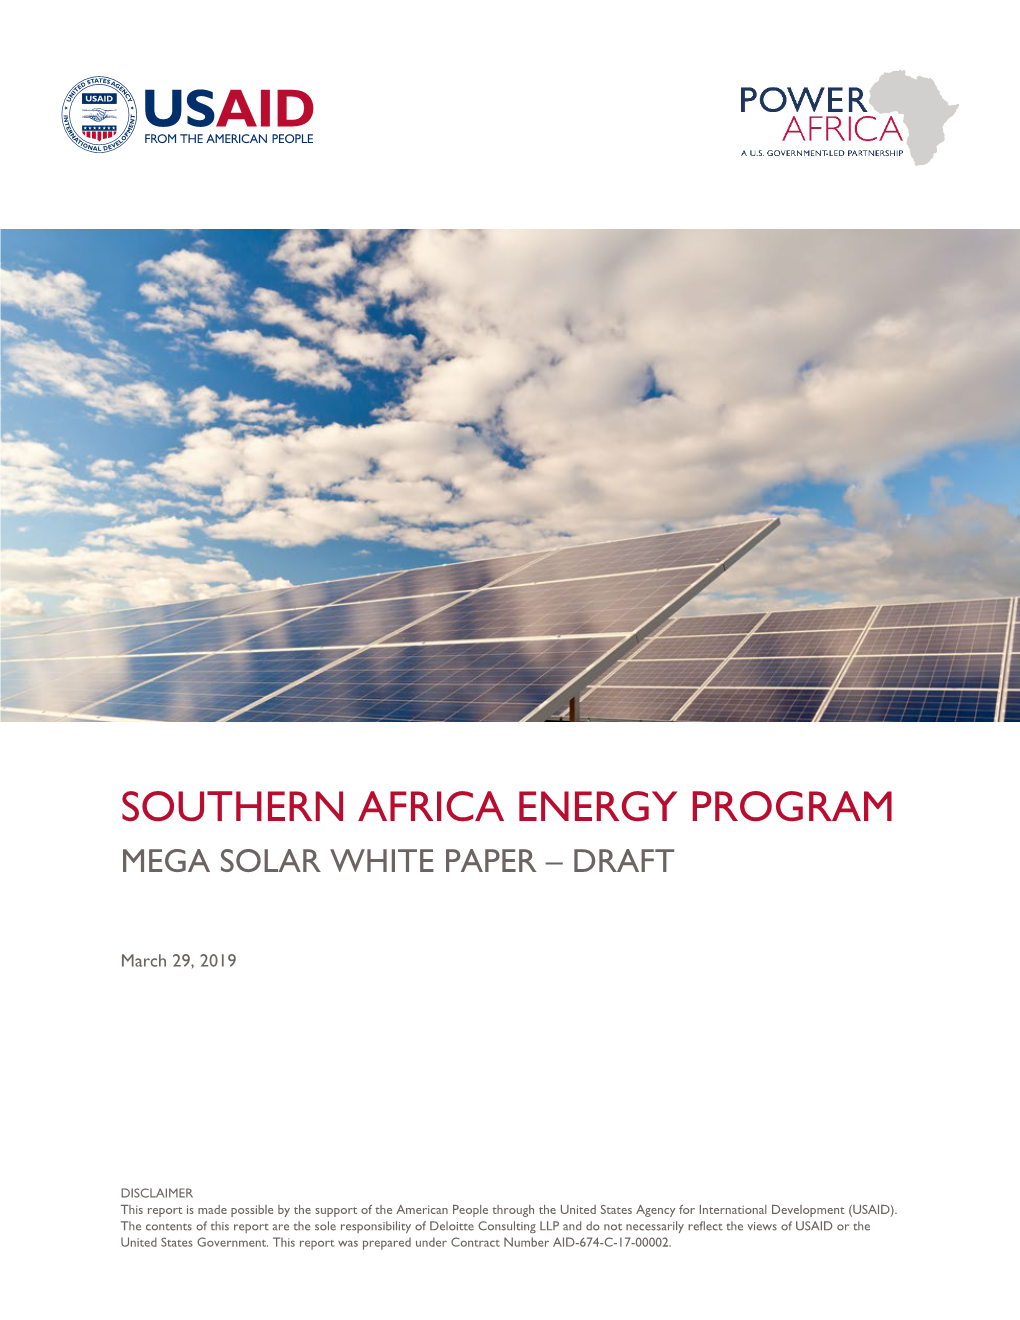 Southern Africa Energy Program Mega Solar White Paper – Draft